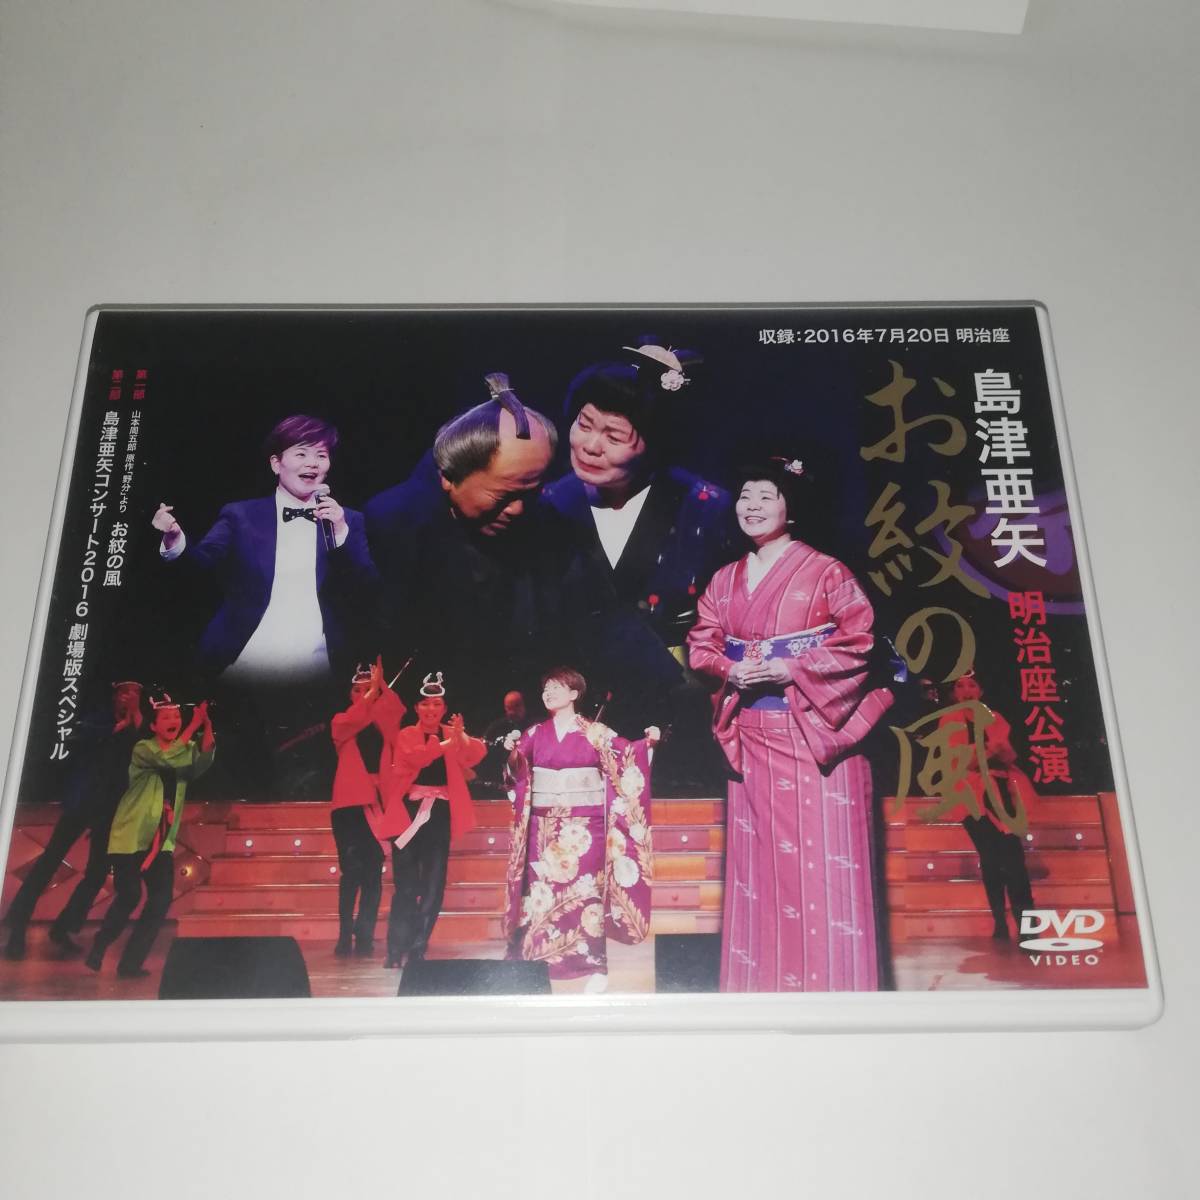 島津亜矢 明治座公演 お紋の風 [DVD] (shin-